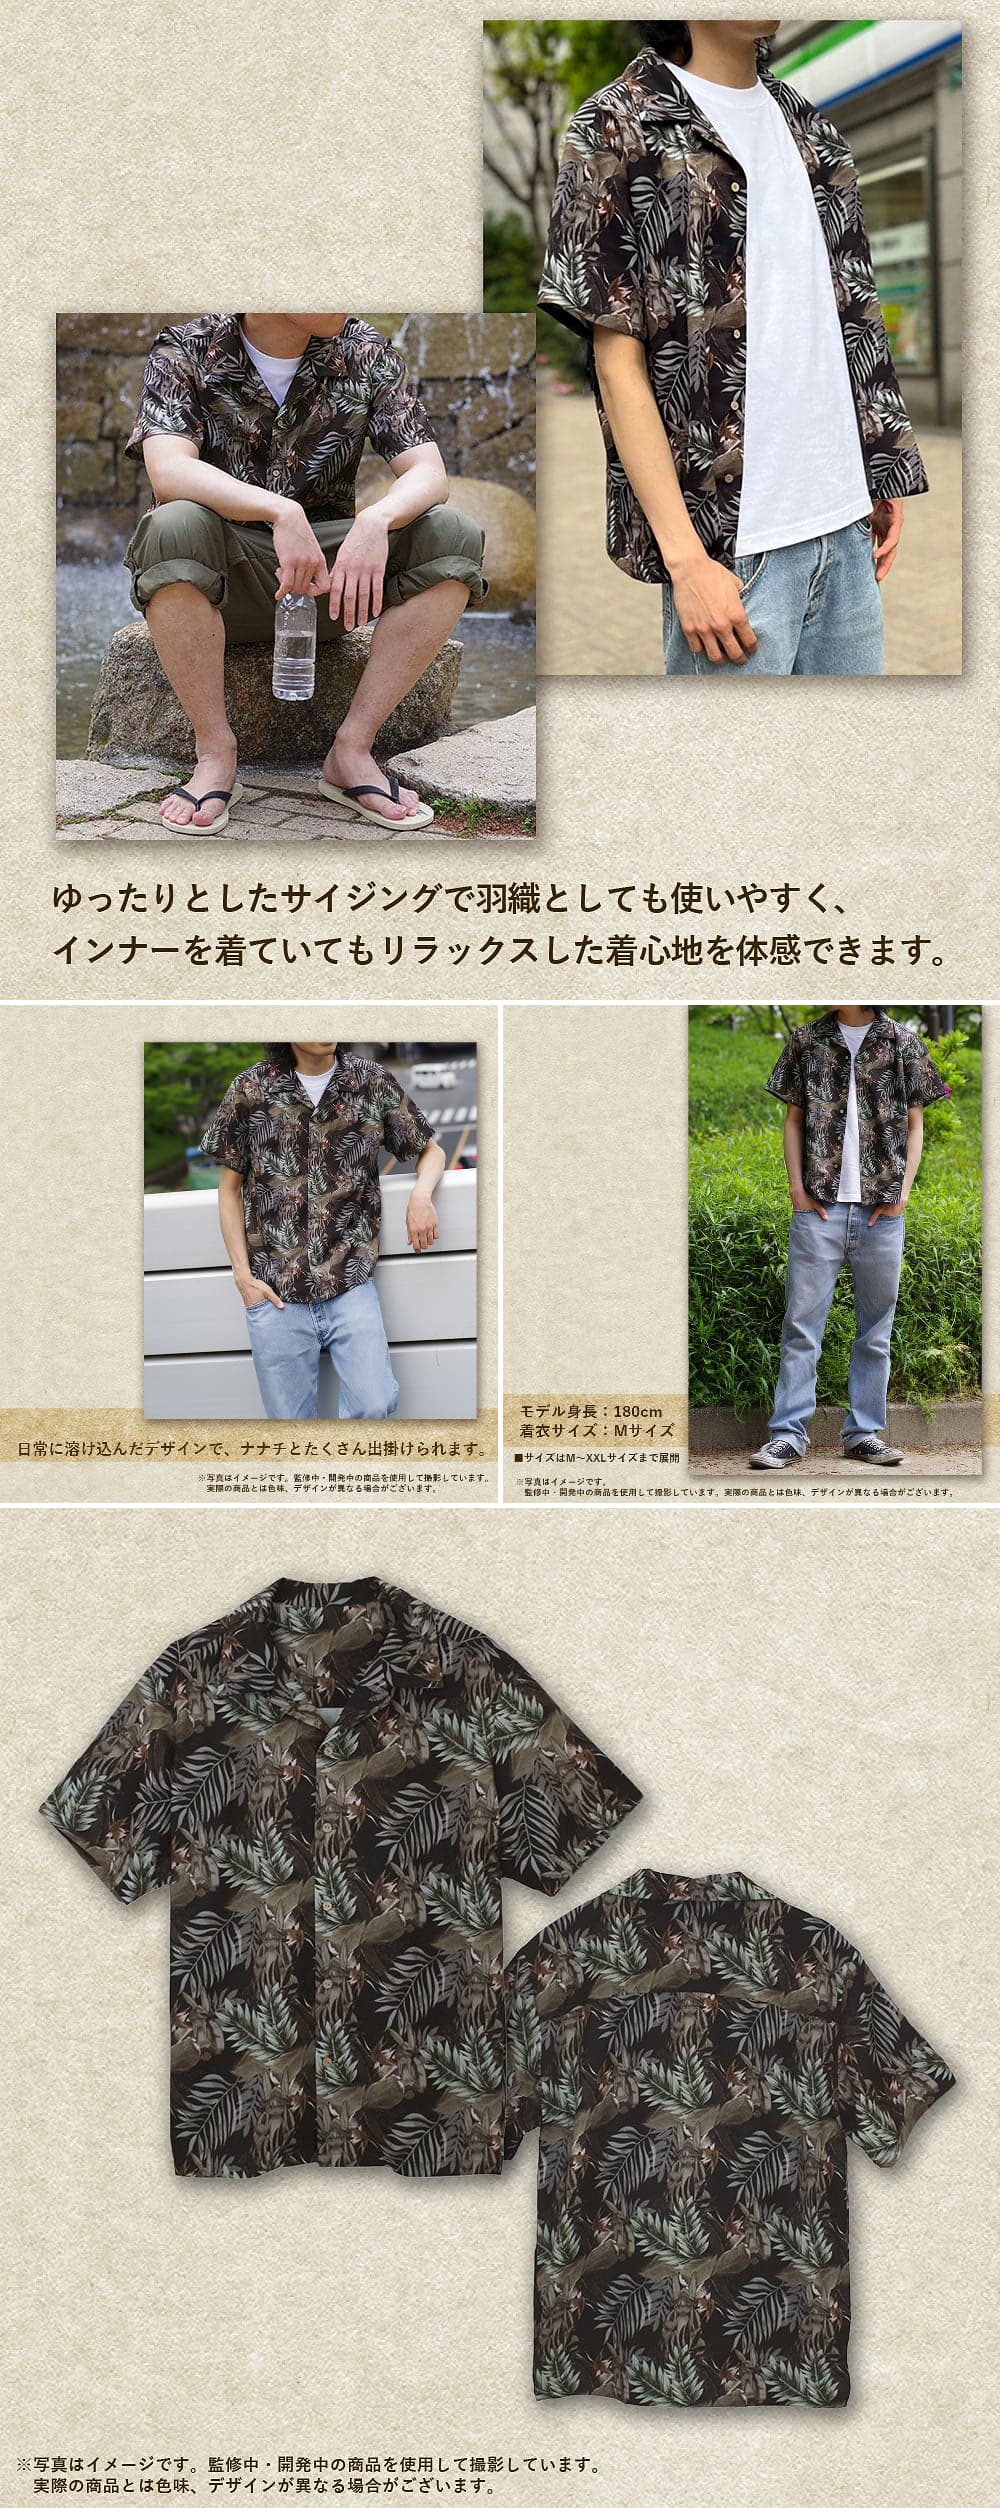 メイドインアビス」ナナチのアロハシャツ 8月上旬発売! (初回生産限定)